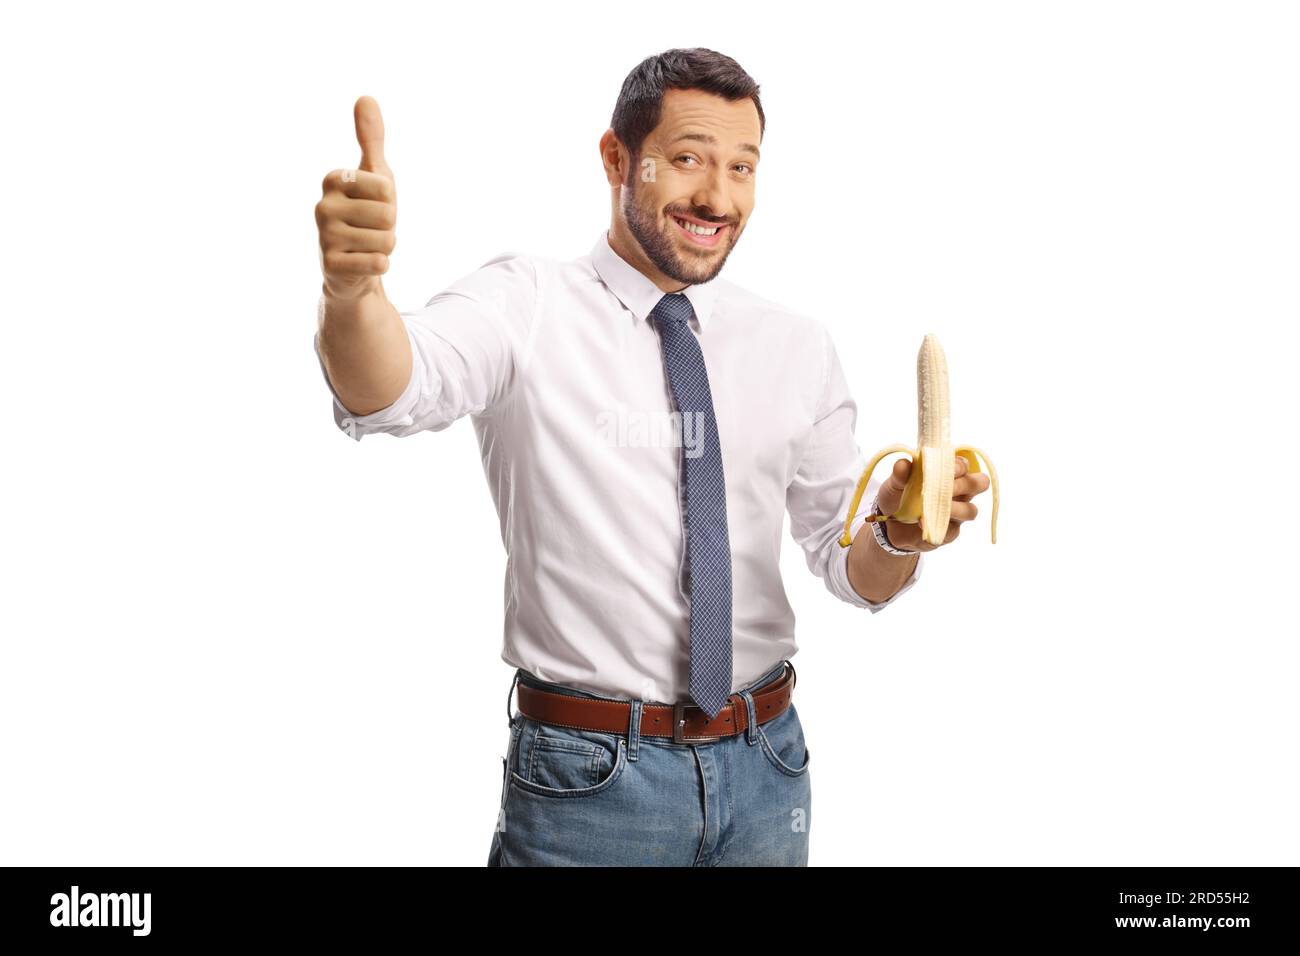 Junger Mann, der eine Banane in der Hand hält und das Schild mit den Daumen nach oben zeigt, isoliert auf weißem Hintergrund Stockfoto